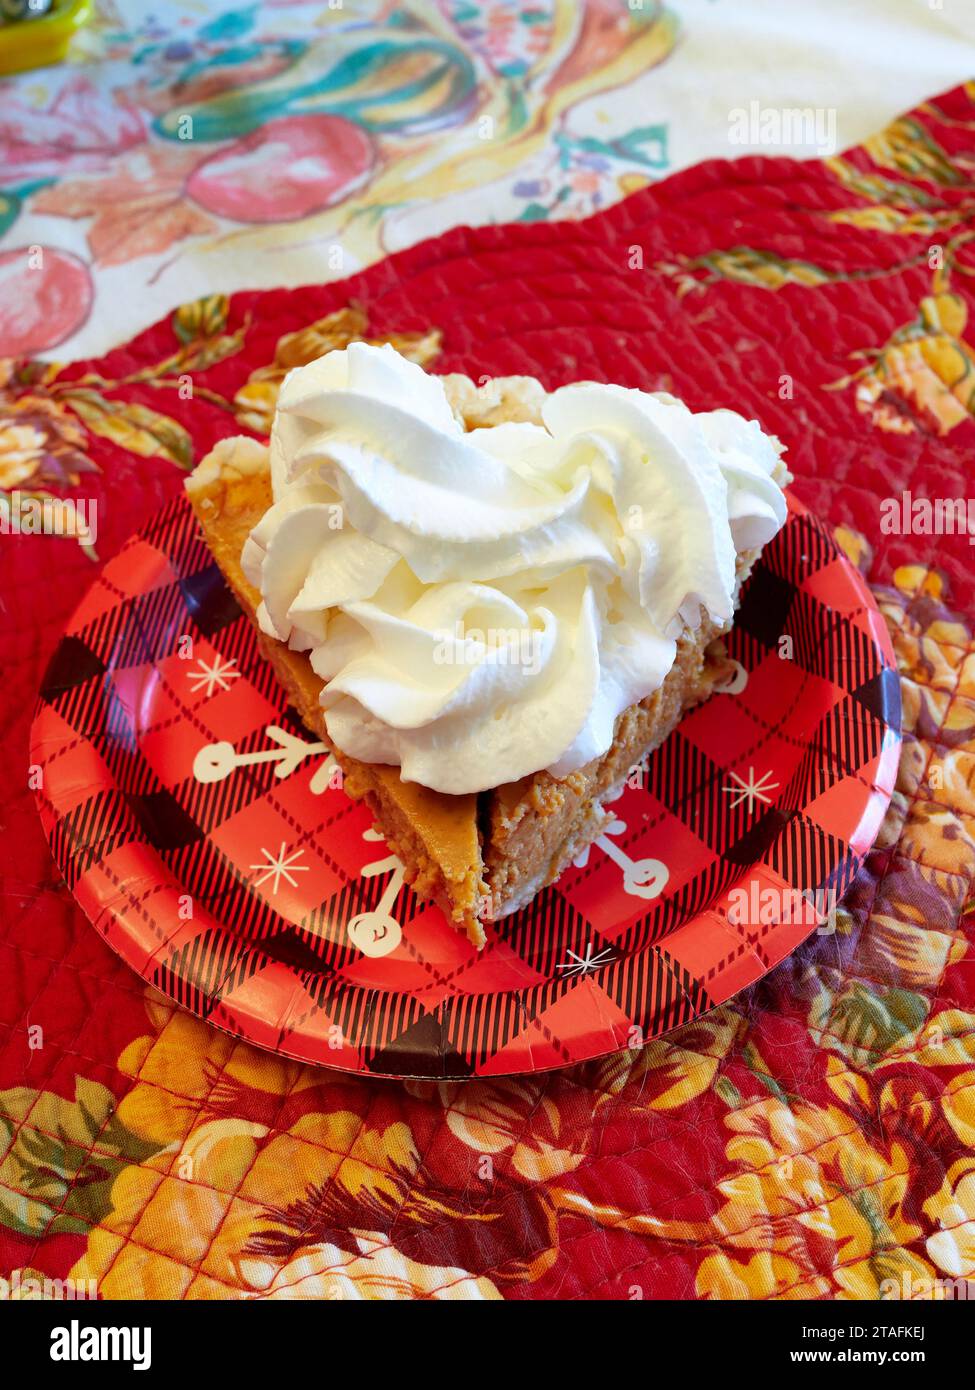 Fetta di torta di zucca con panna montata sopra per dessert su un piatto di carta durante il Ringraziamento o le vacanze di Natale. Foto Stock